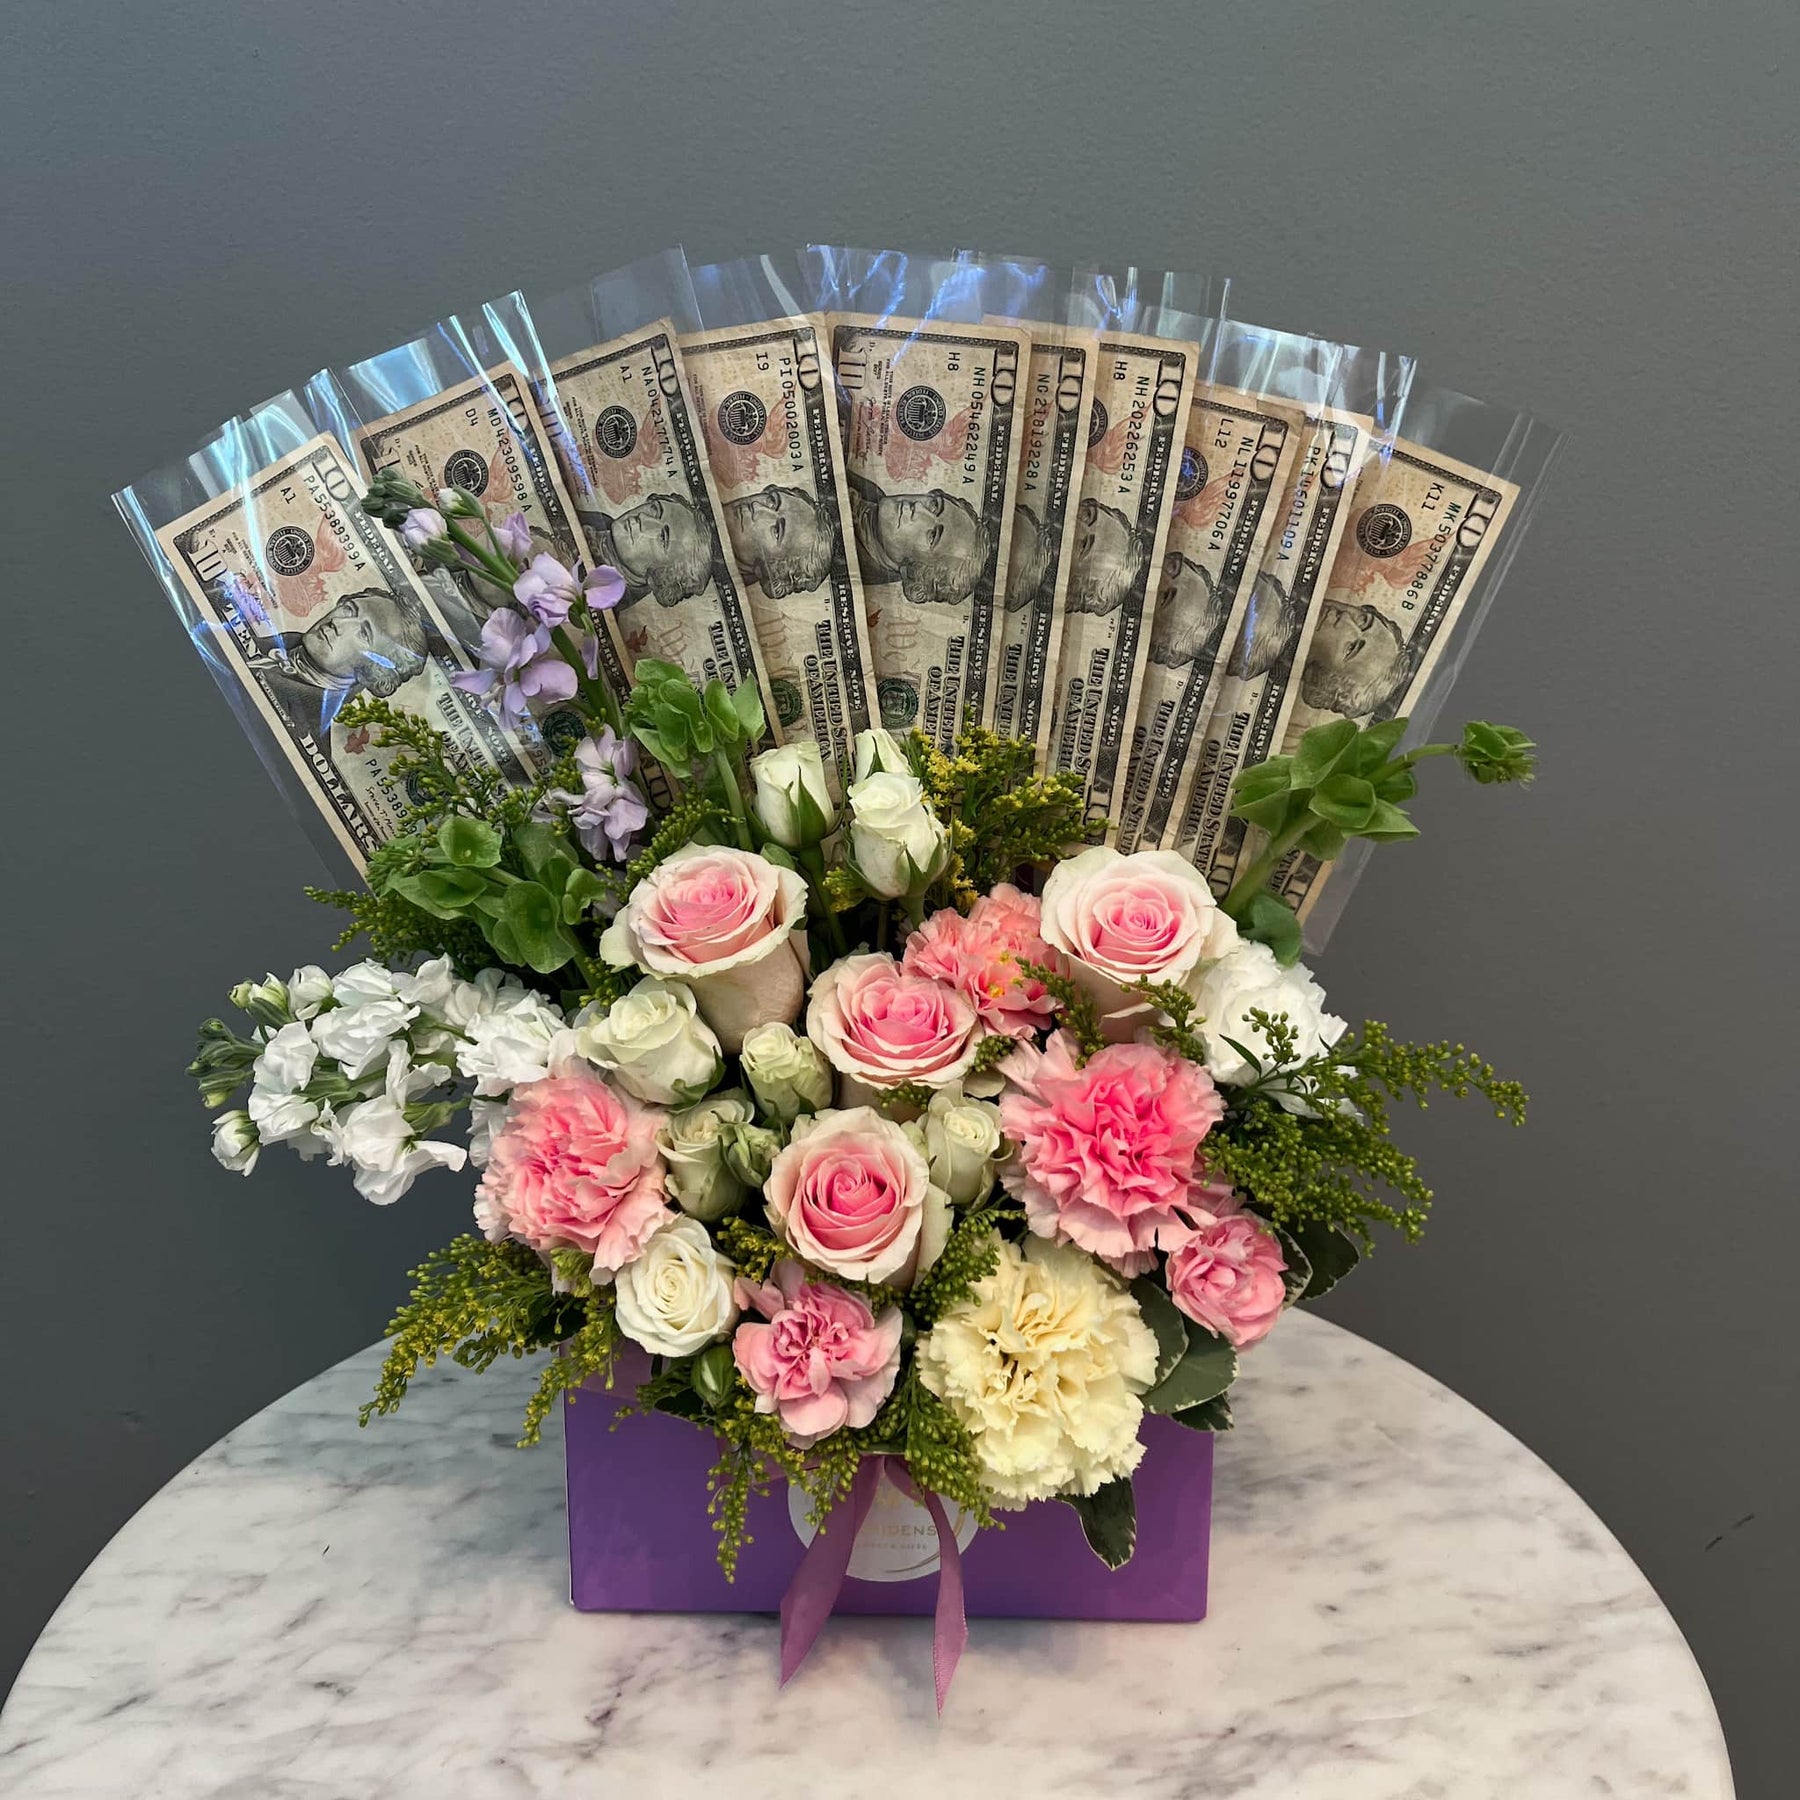 Money Bouquet - Classic Design ($2/$10/$50) –